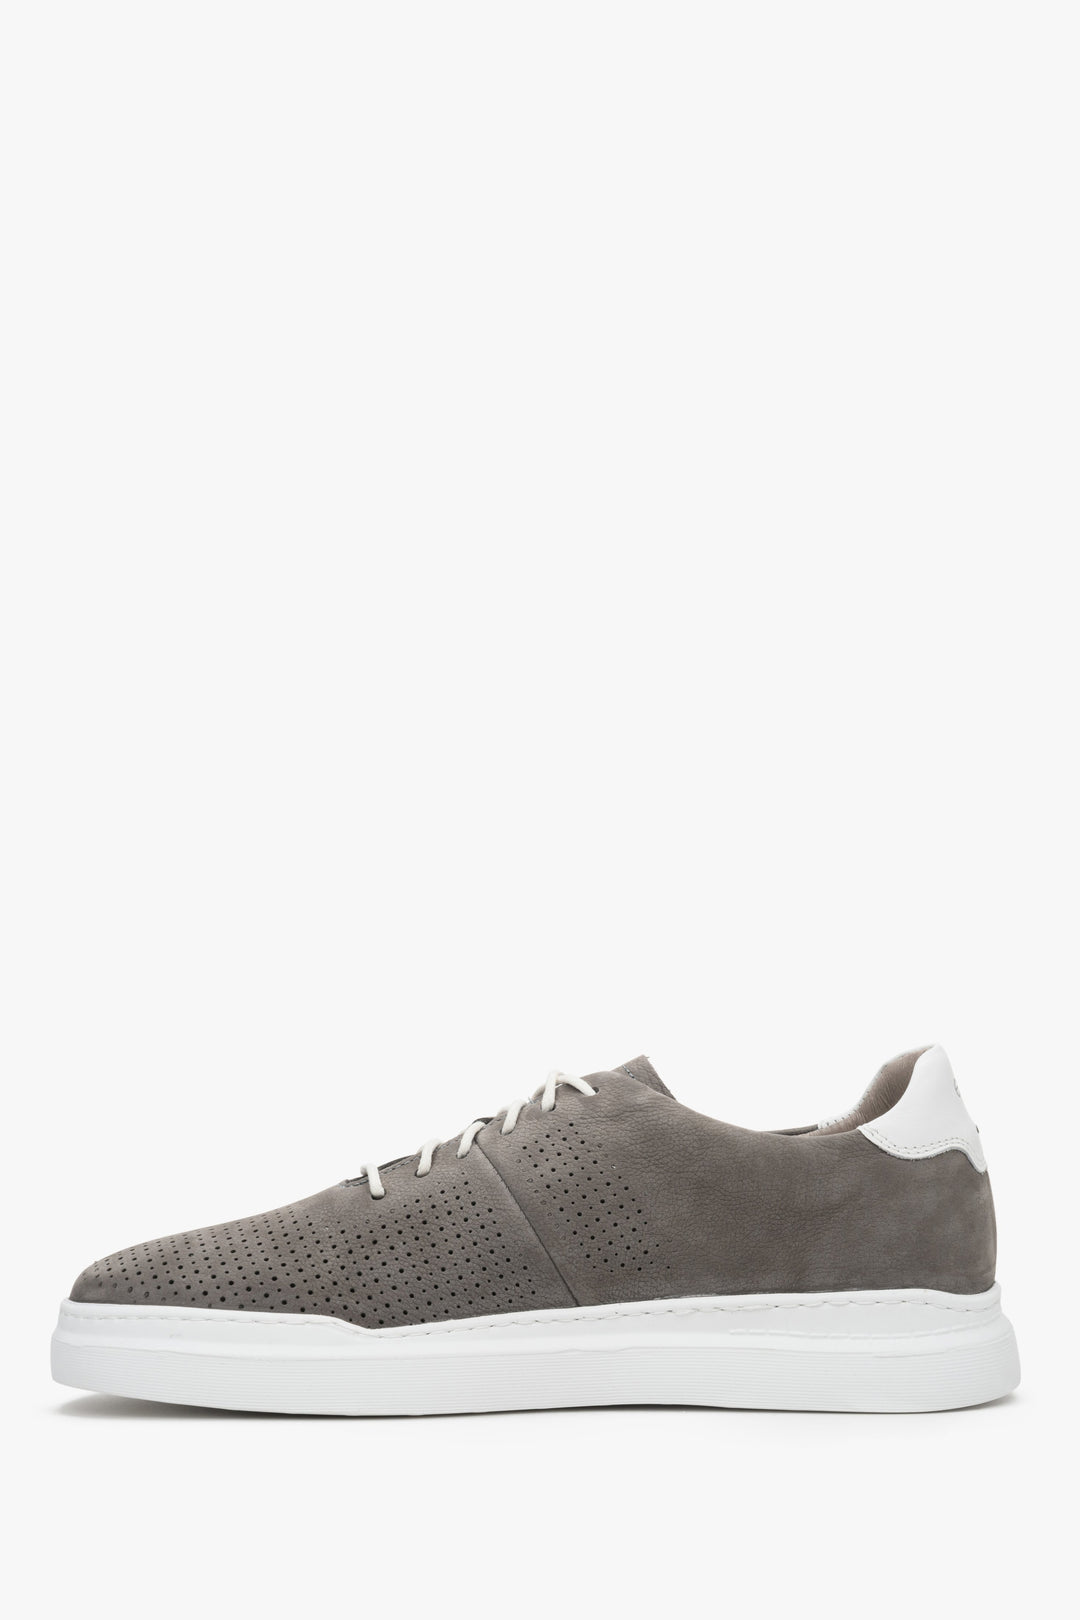 Men's Estro sneakers in grey suede - shoe profile.